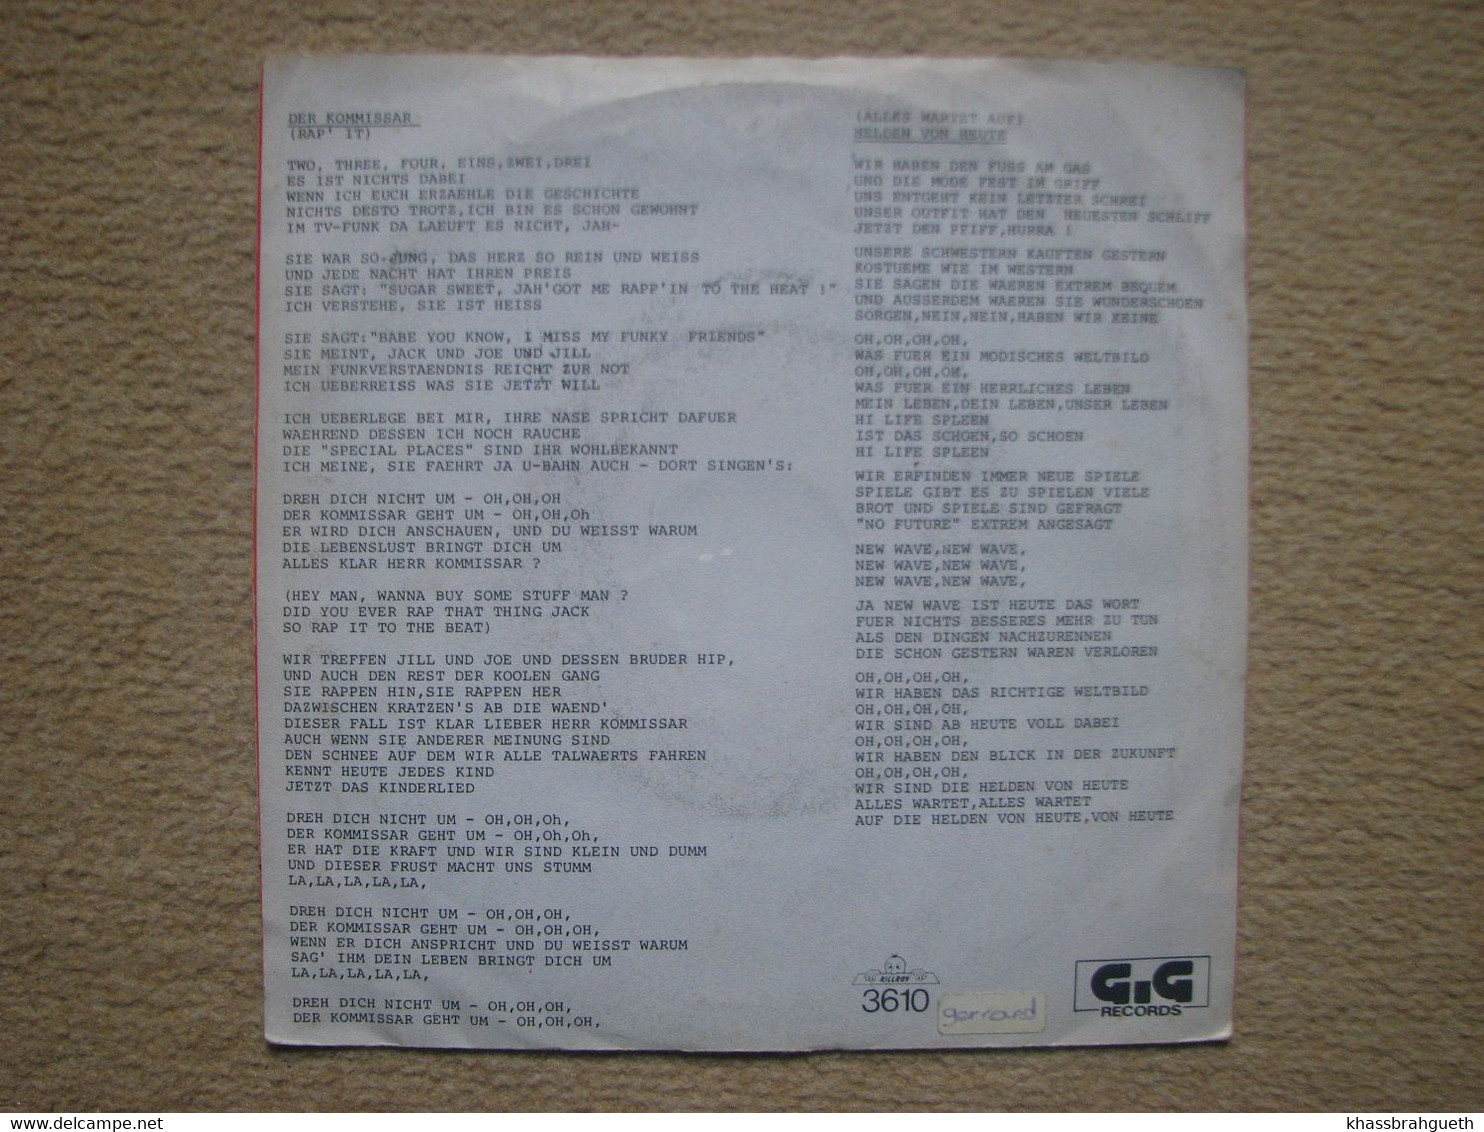 FALCO . DER KOMMISSAR / HELDEN VON HEUTE (45T) (G.G RECORDS) (1982) - Sonstige - Deutsche Musik